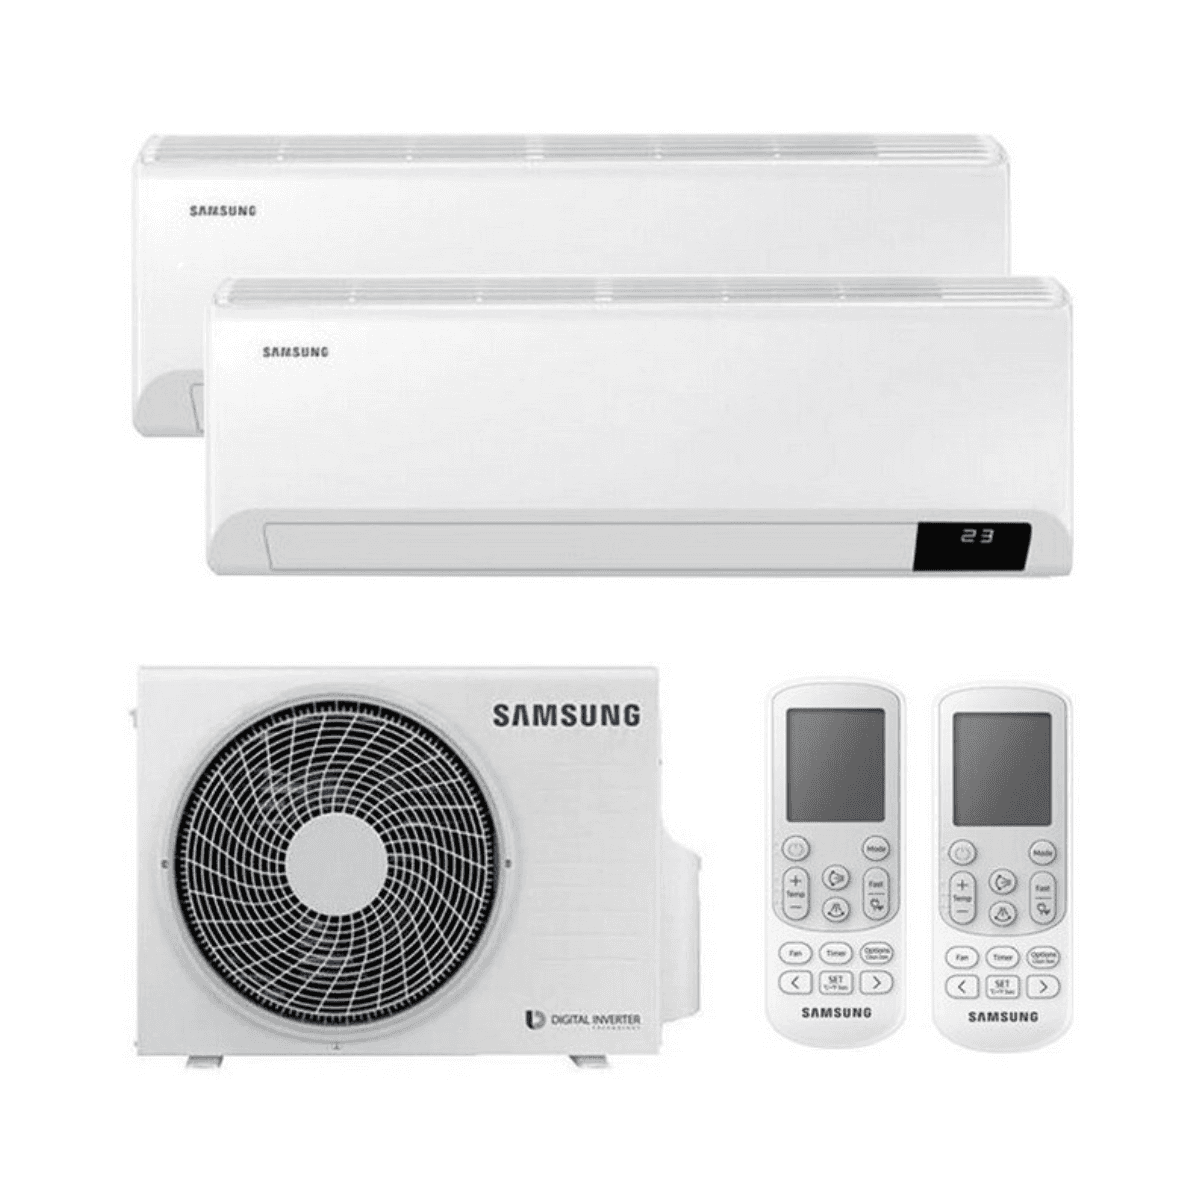 Multisplit-Klimaanlage 2x1 Samsung Wind Free Comfort 2,5 kW 9000 BTU + 3,5 kW 12000 BTU mit der Referenz KITSAMWINDFREE09+12 von der Marke SAMSUNG